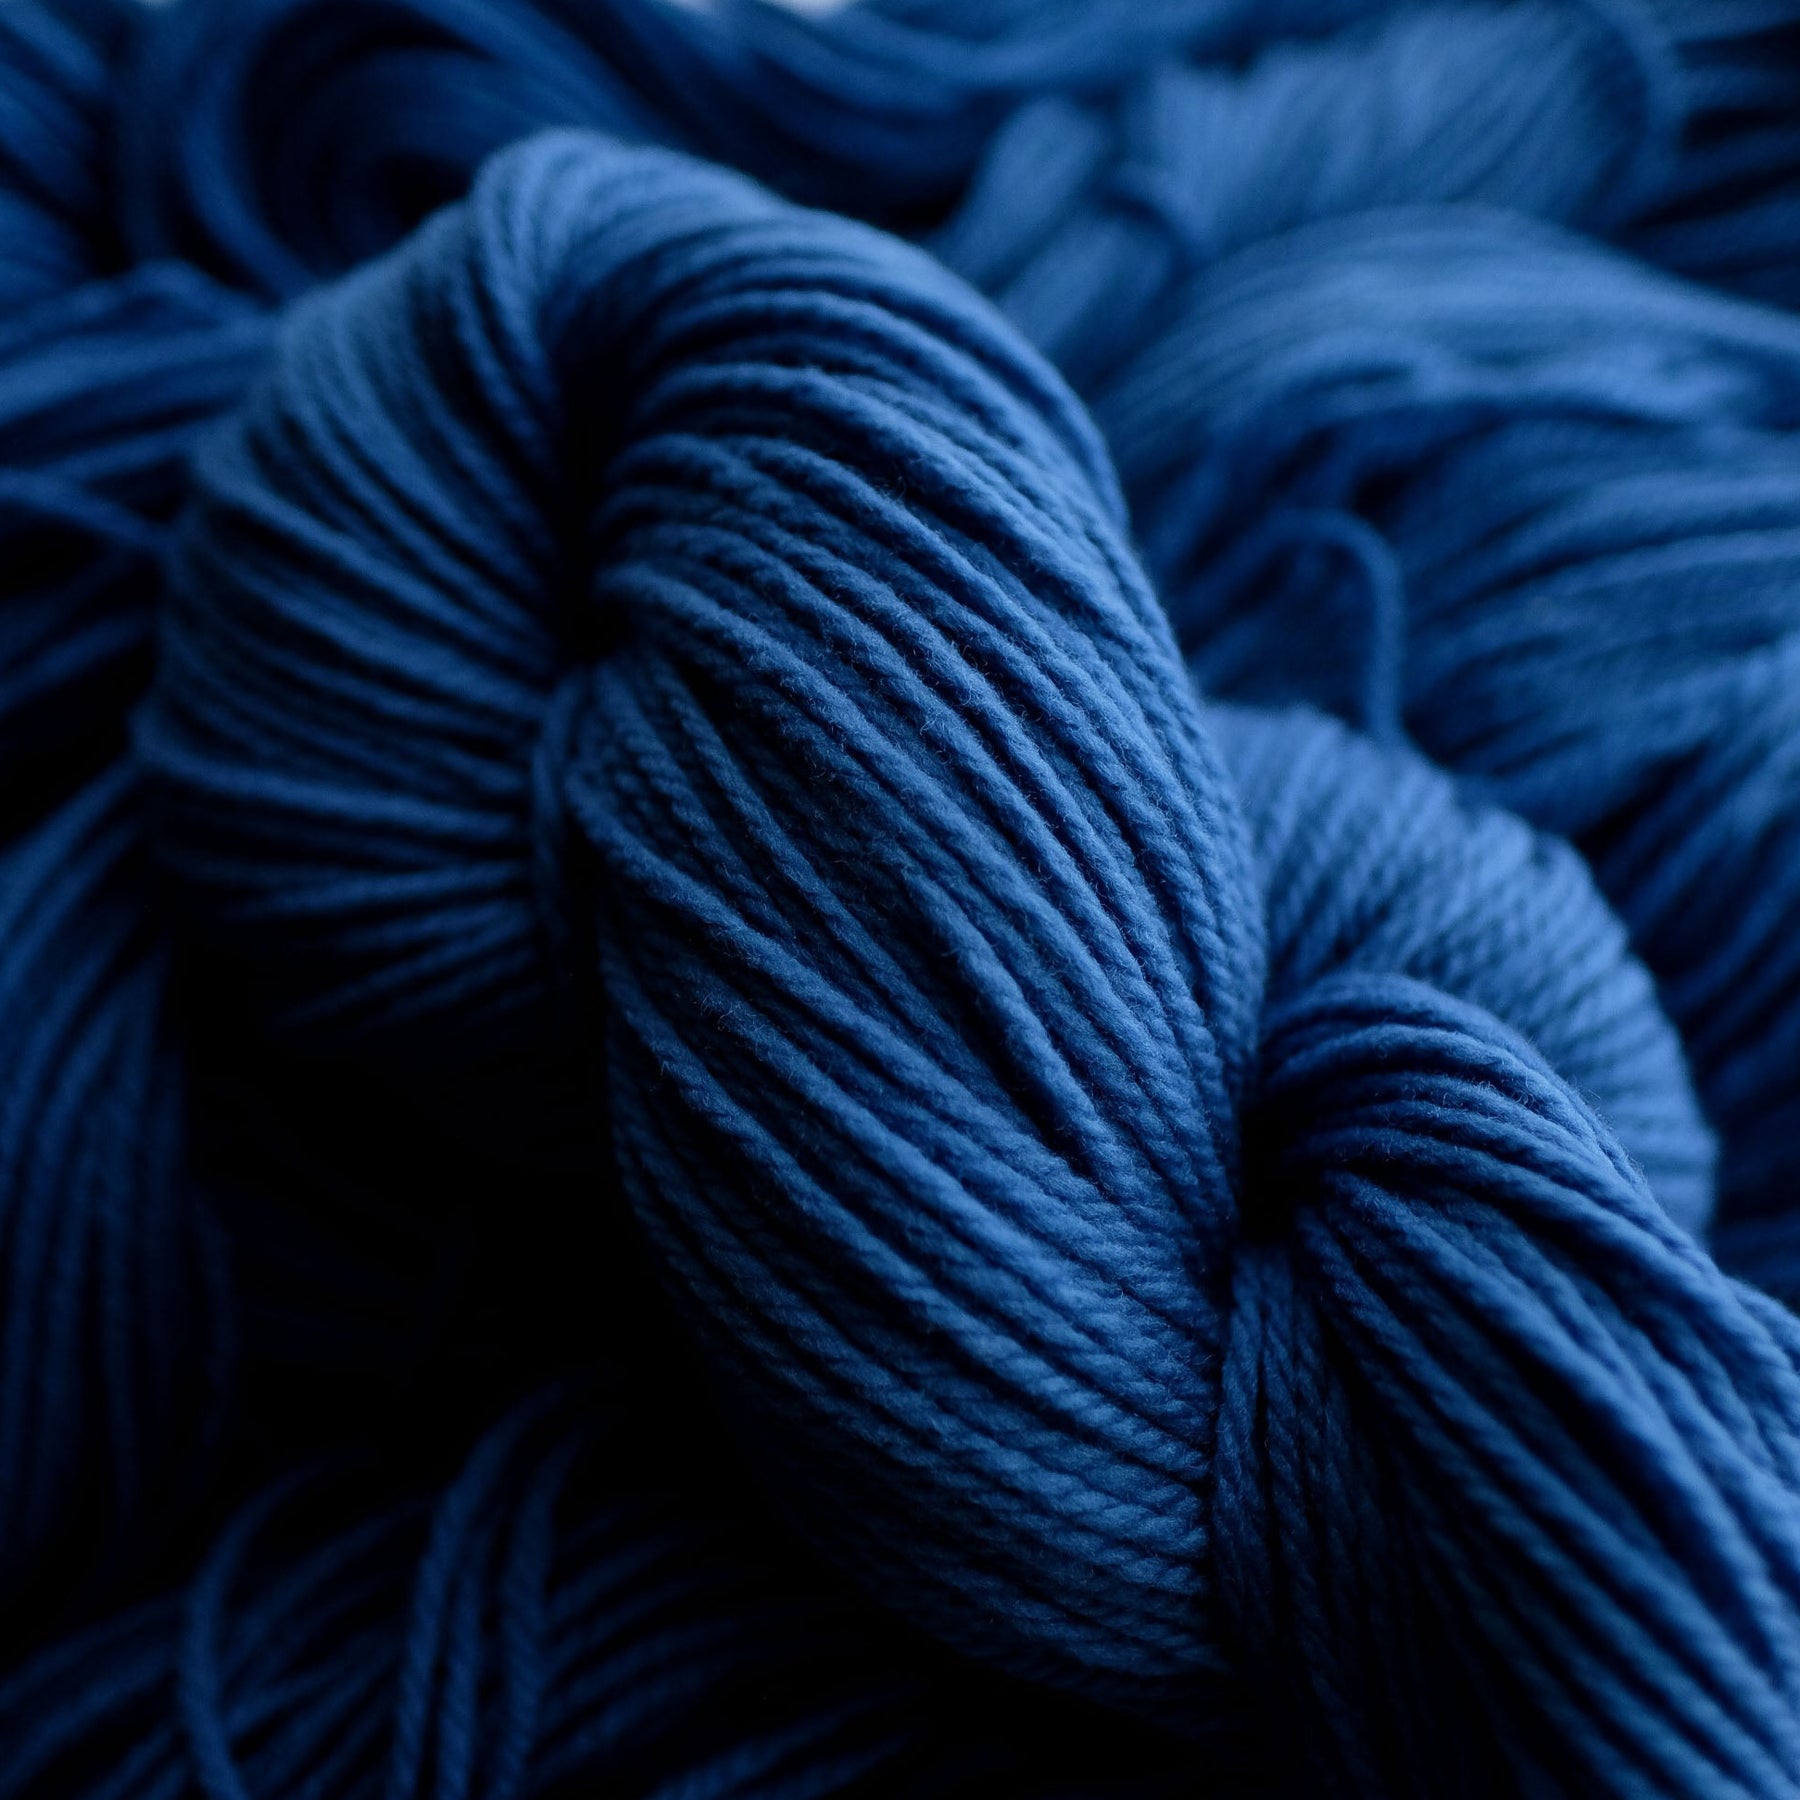 Indigo Dye a Skein of Yarn - Friday, March 15th & Saturday, March 16th